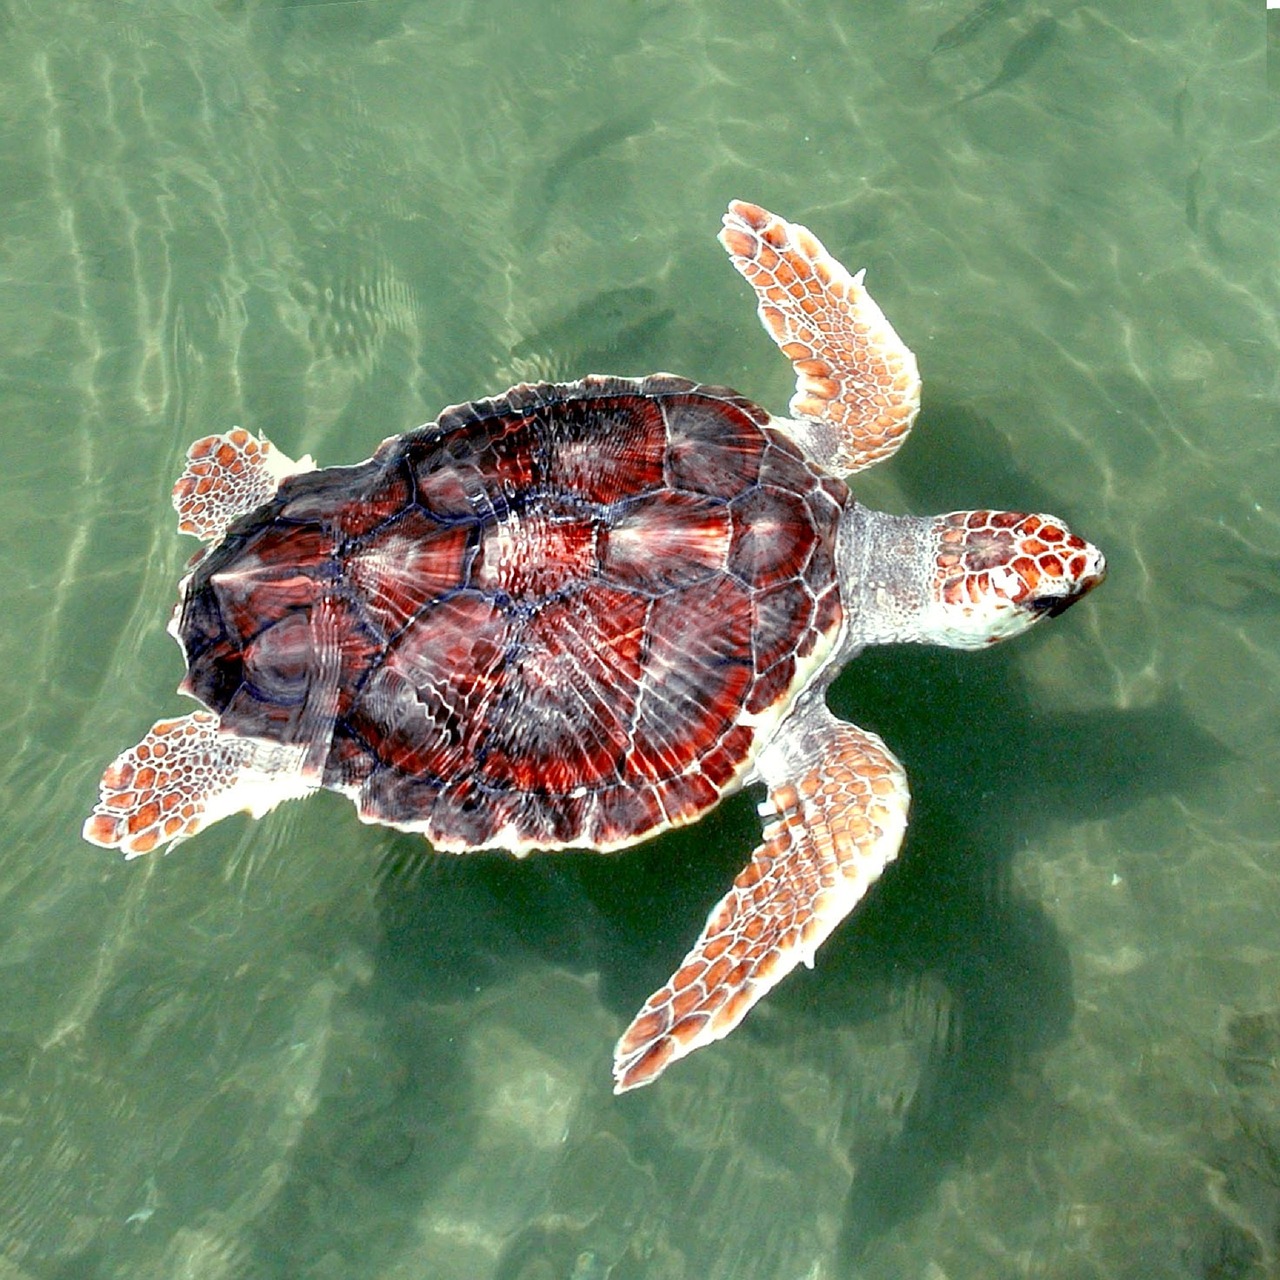 Are Sea Turtles Mammals Or Reptiles